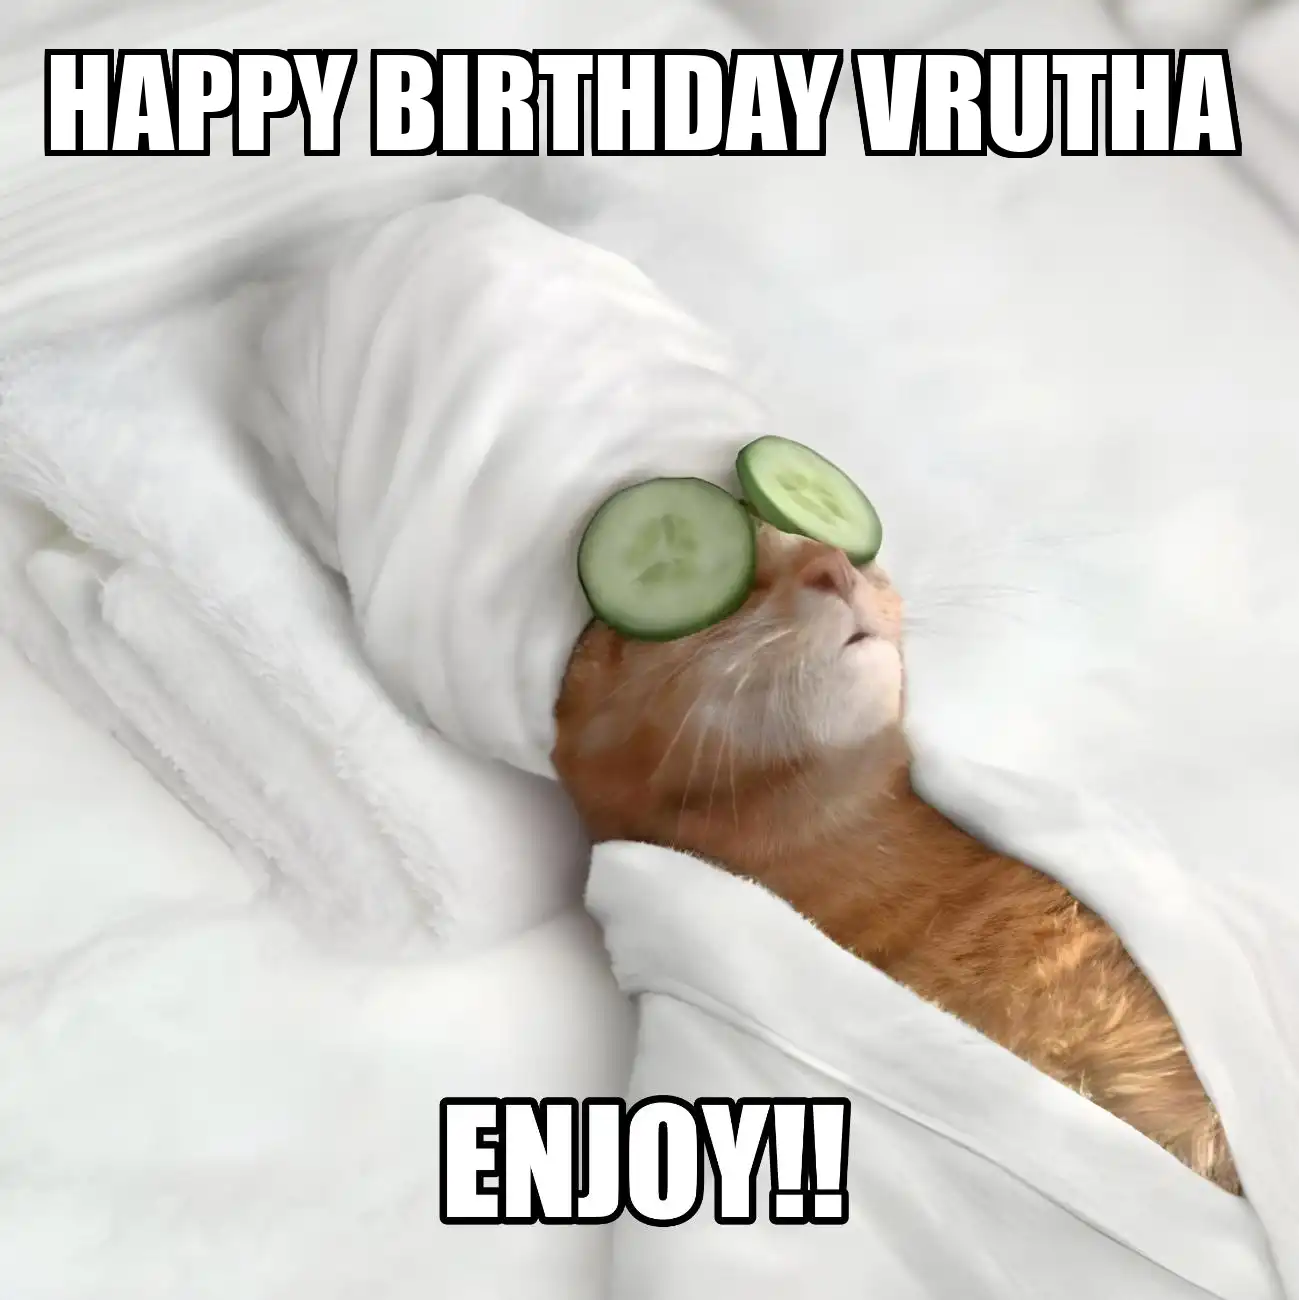 Happy Birthday Vrutha Enjoy Cat Meme